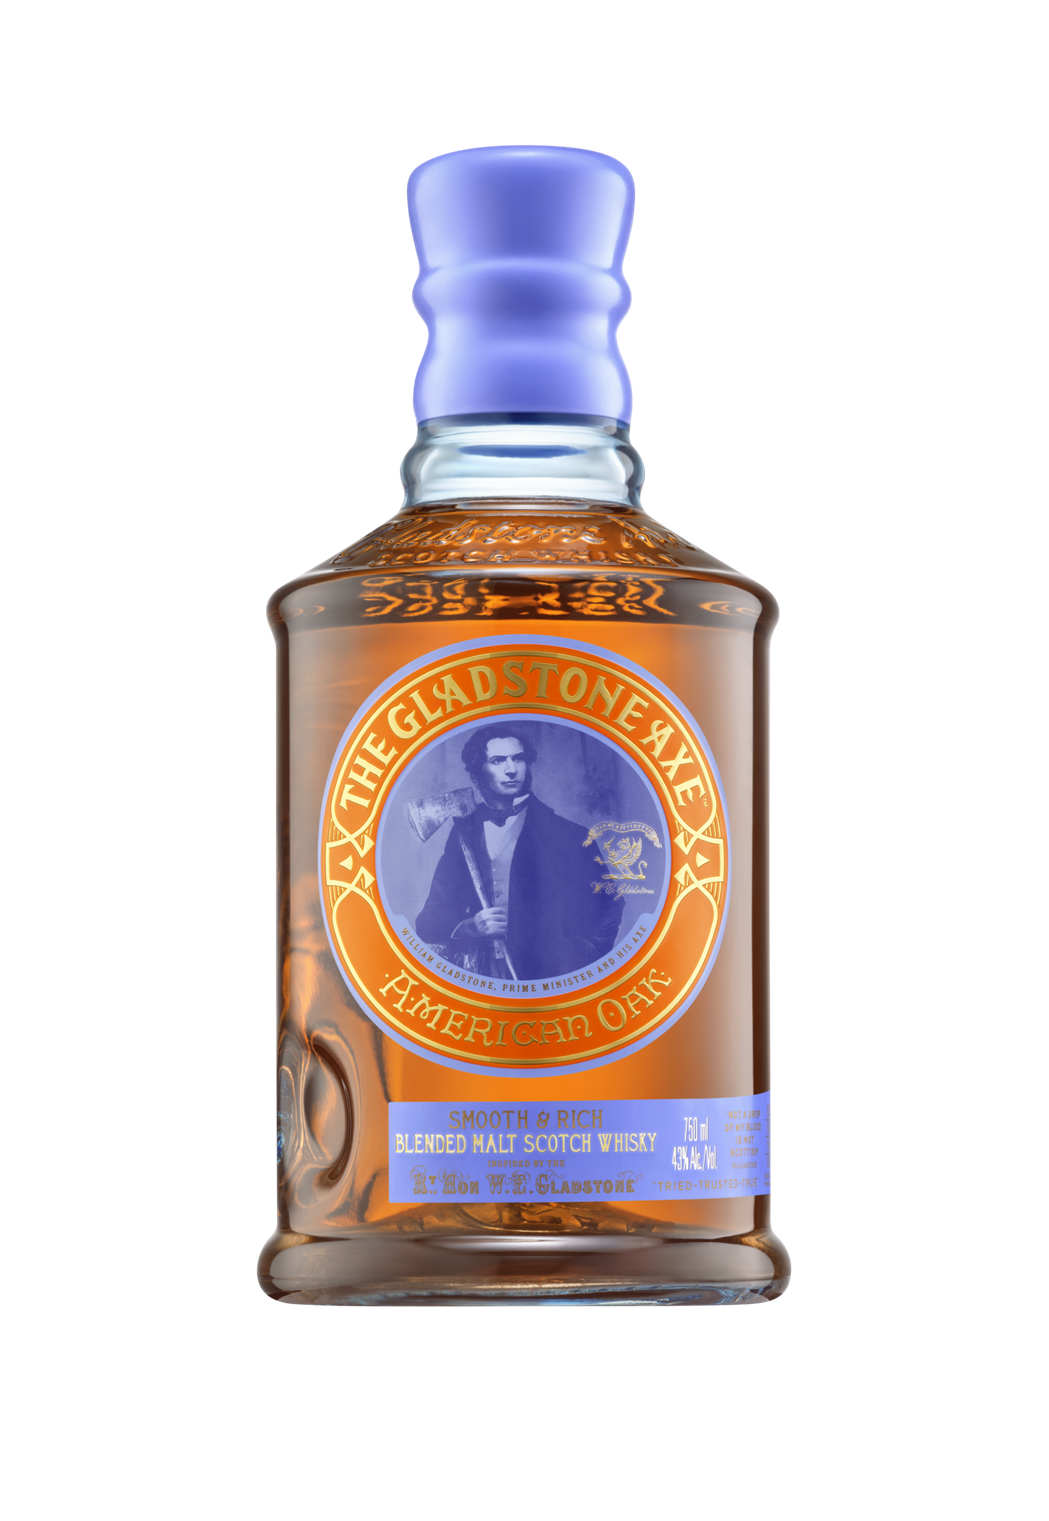 首相之斧 美國橡木桶 調和麥芽蘇格蘭威士忌The Gladstone Axe...